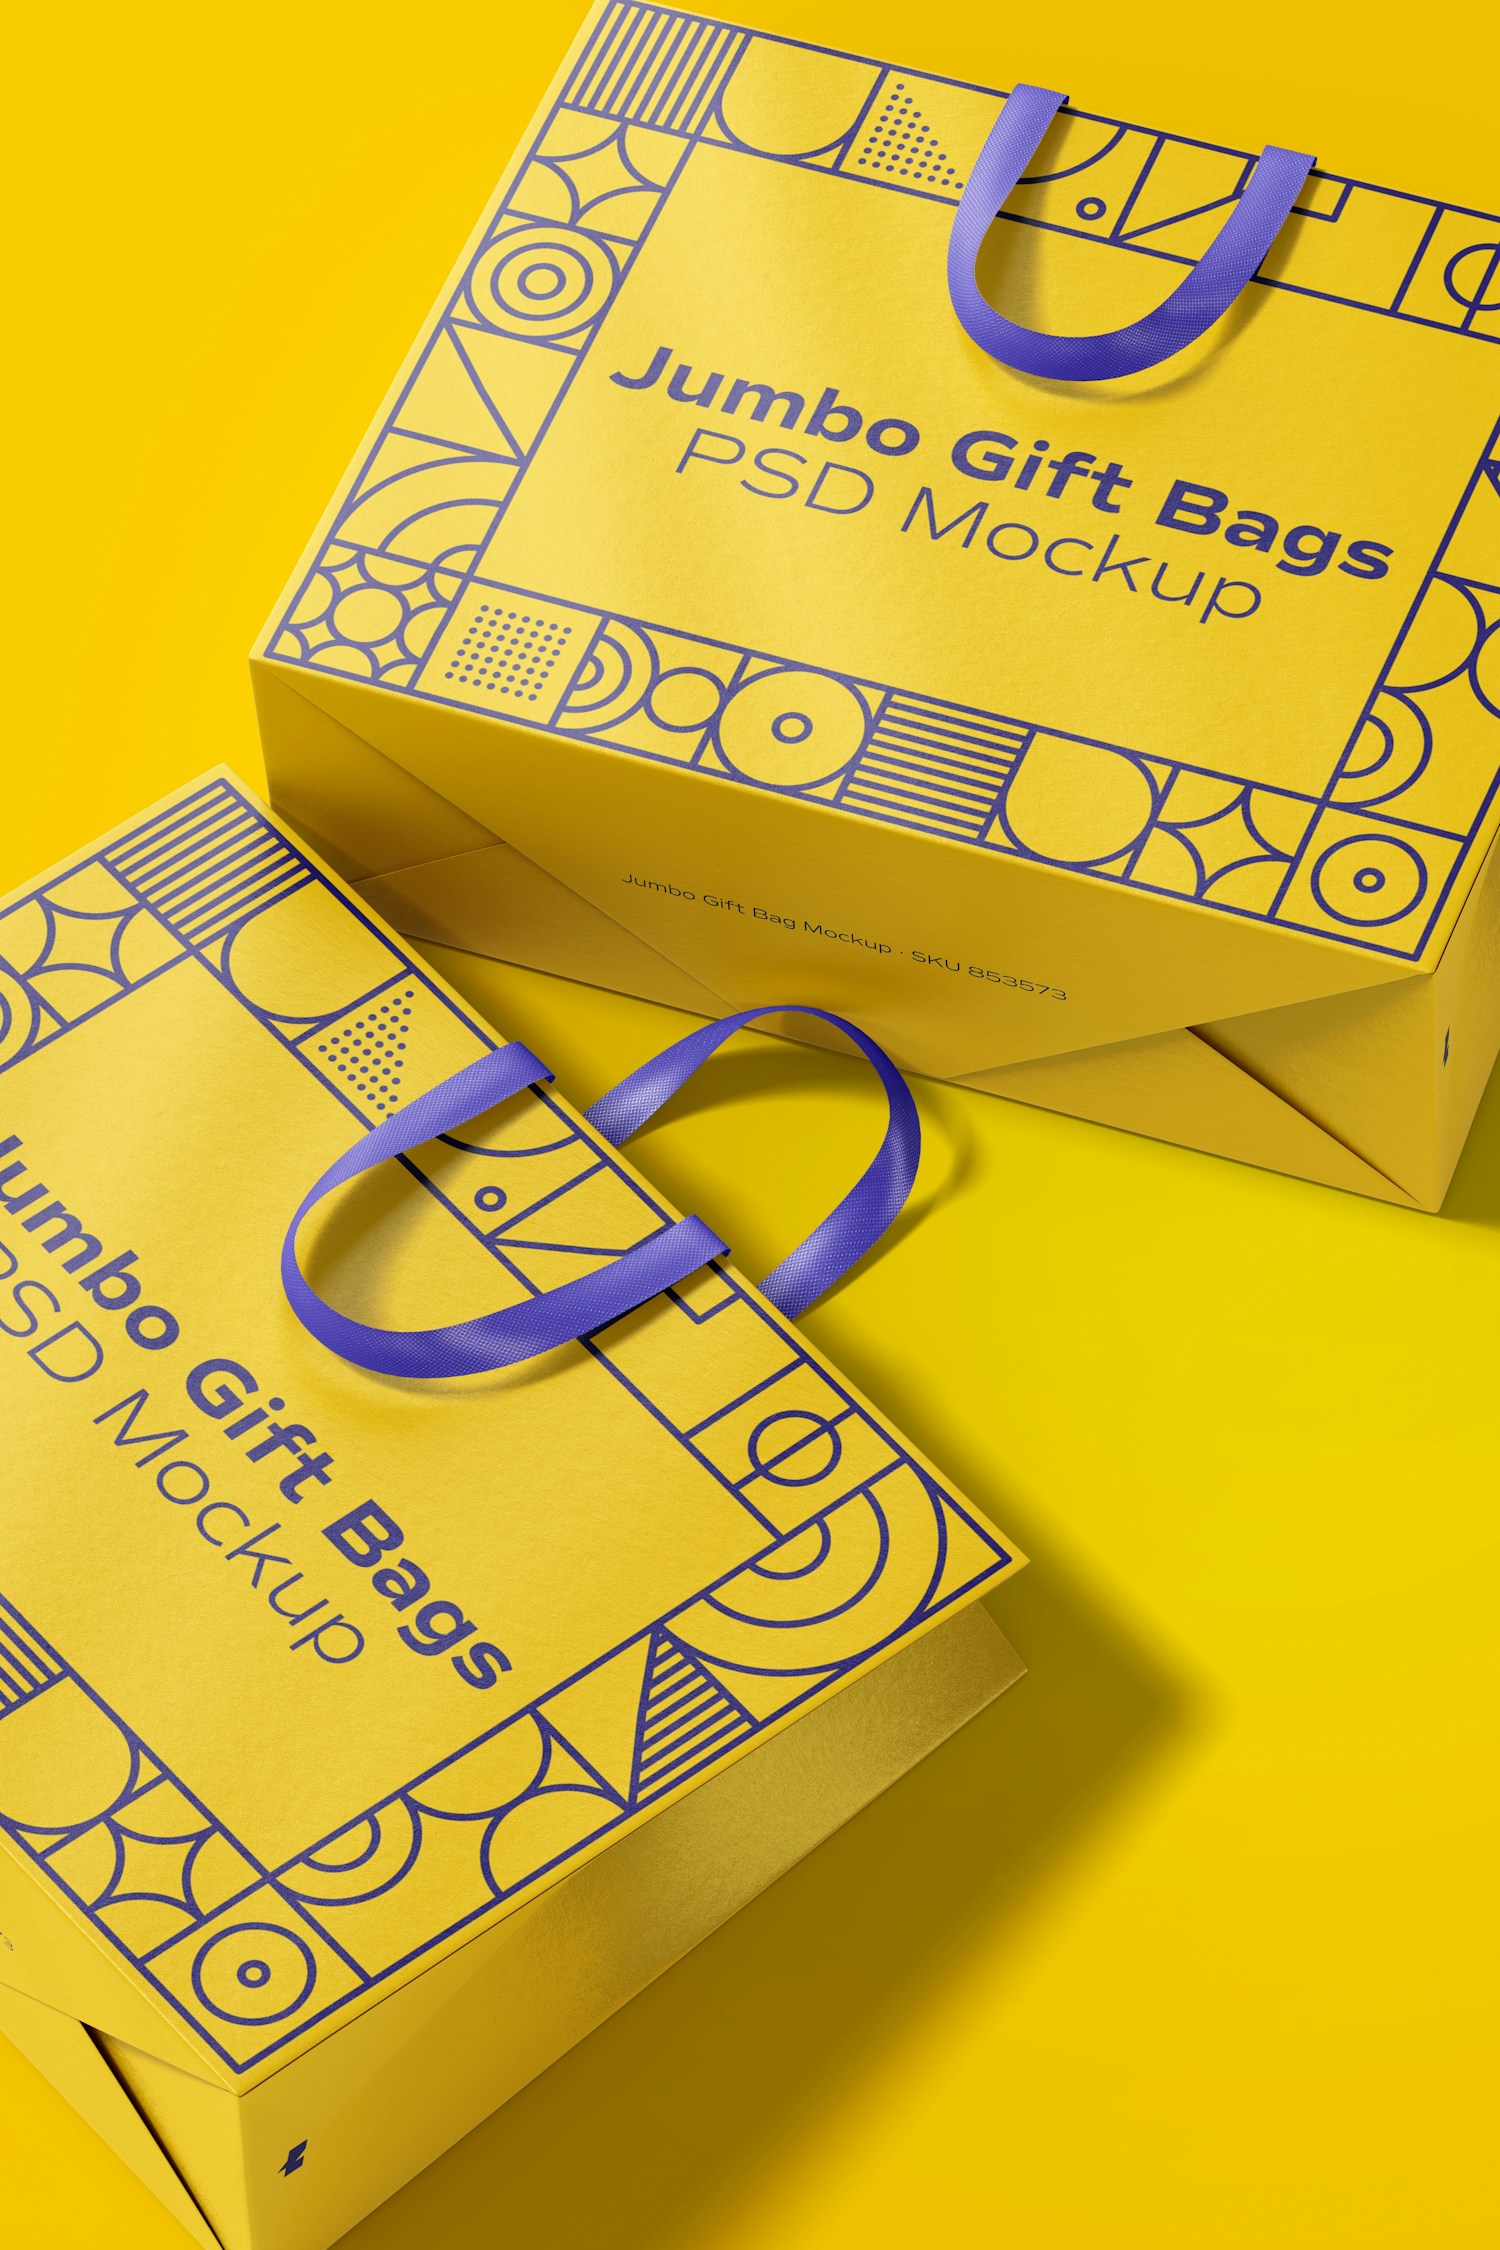 Jumbo Gift Bags with Ribbon Handle Mockup, Close Up